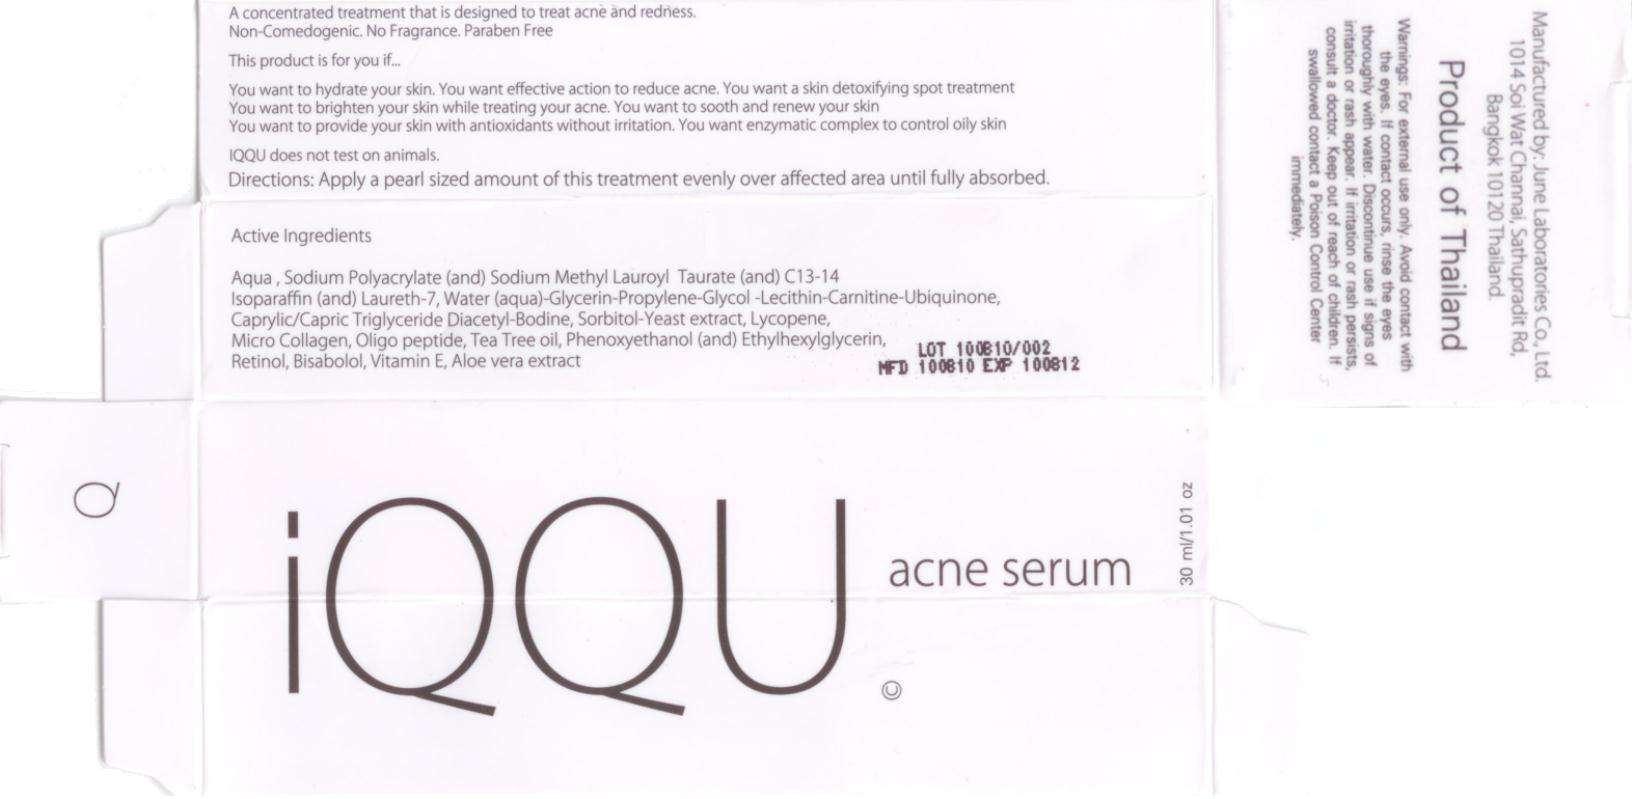 IQQU Acne Serum